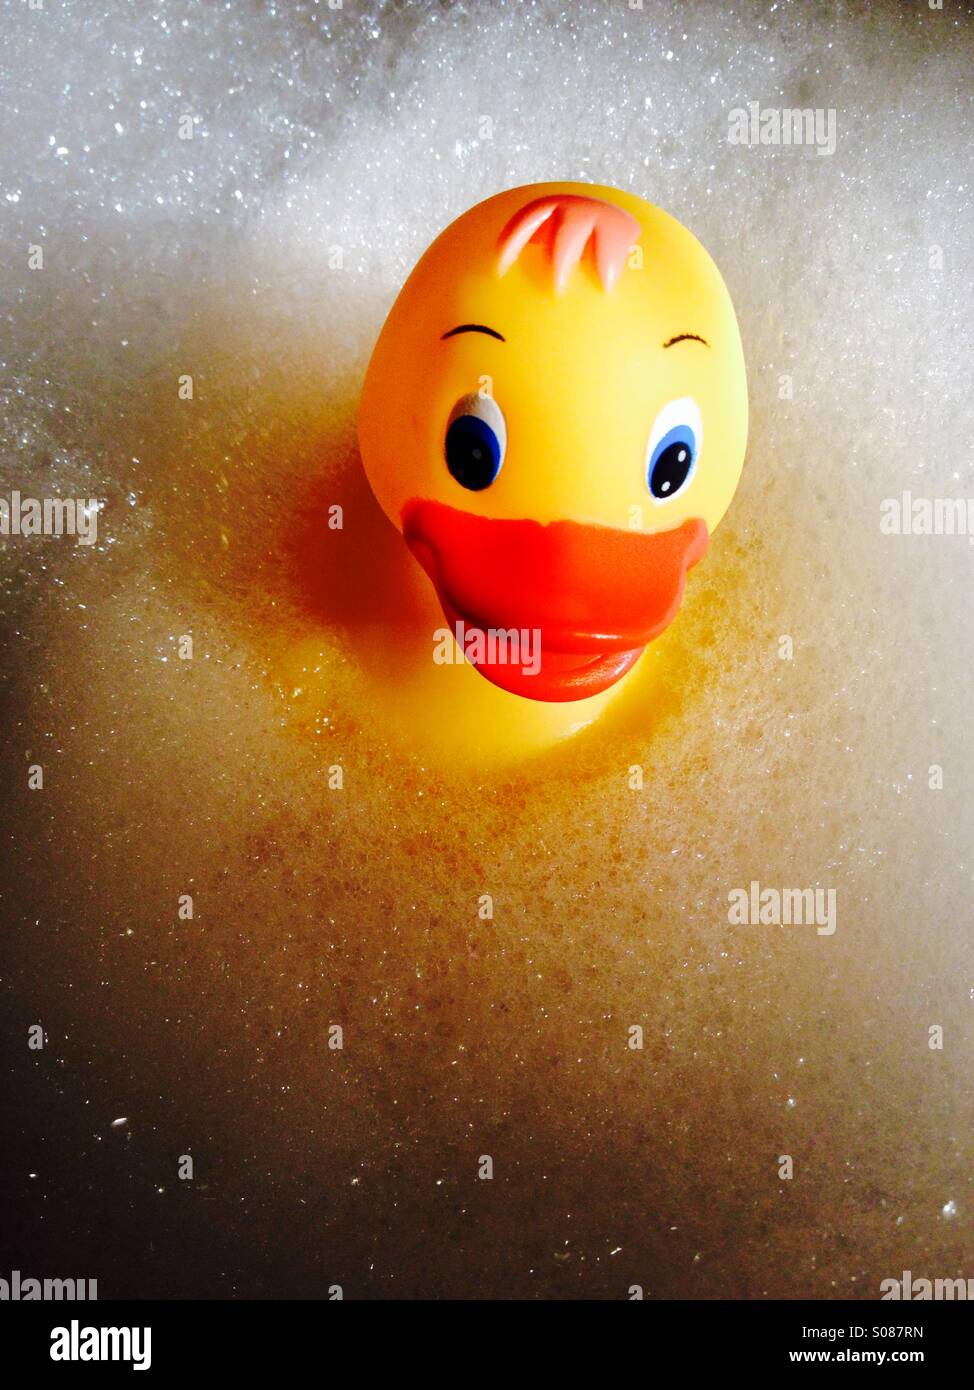 Image d'un canard en plastique jaune flottant sur bulles mousseuse Banque D'Images